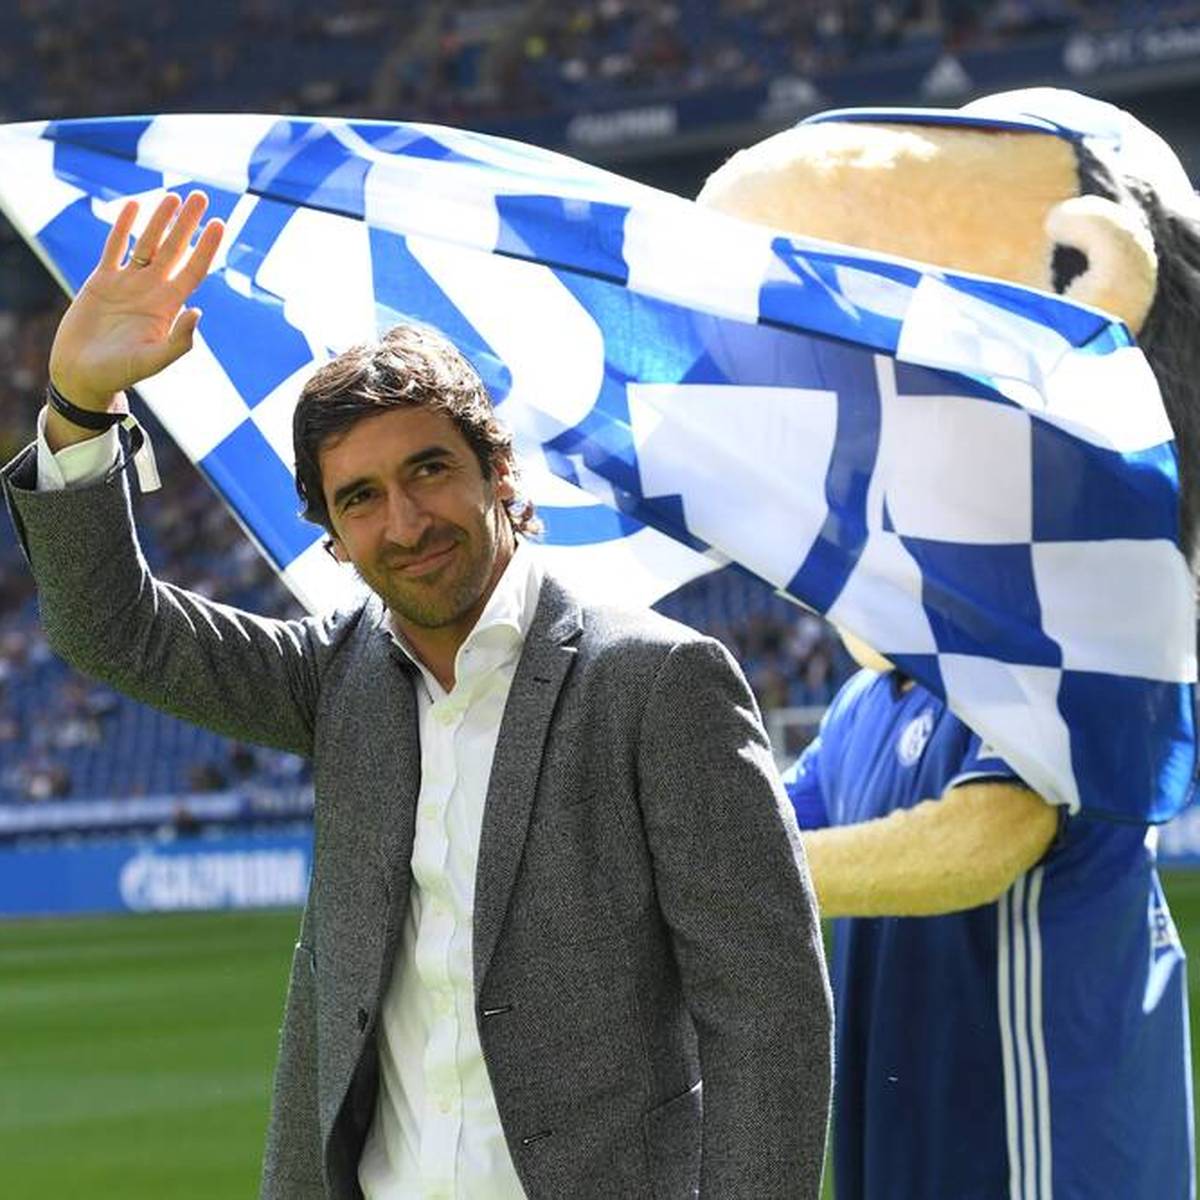 Ein spektakuläres Gerücht über eine Rückkehr von Raúl zum FC Schalke 04 taucht in der internationalen Presse auf. Der Verein äußert sich dazu.